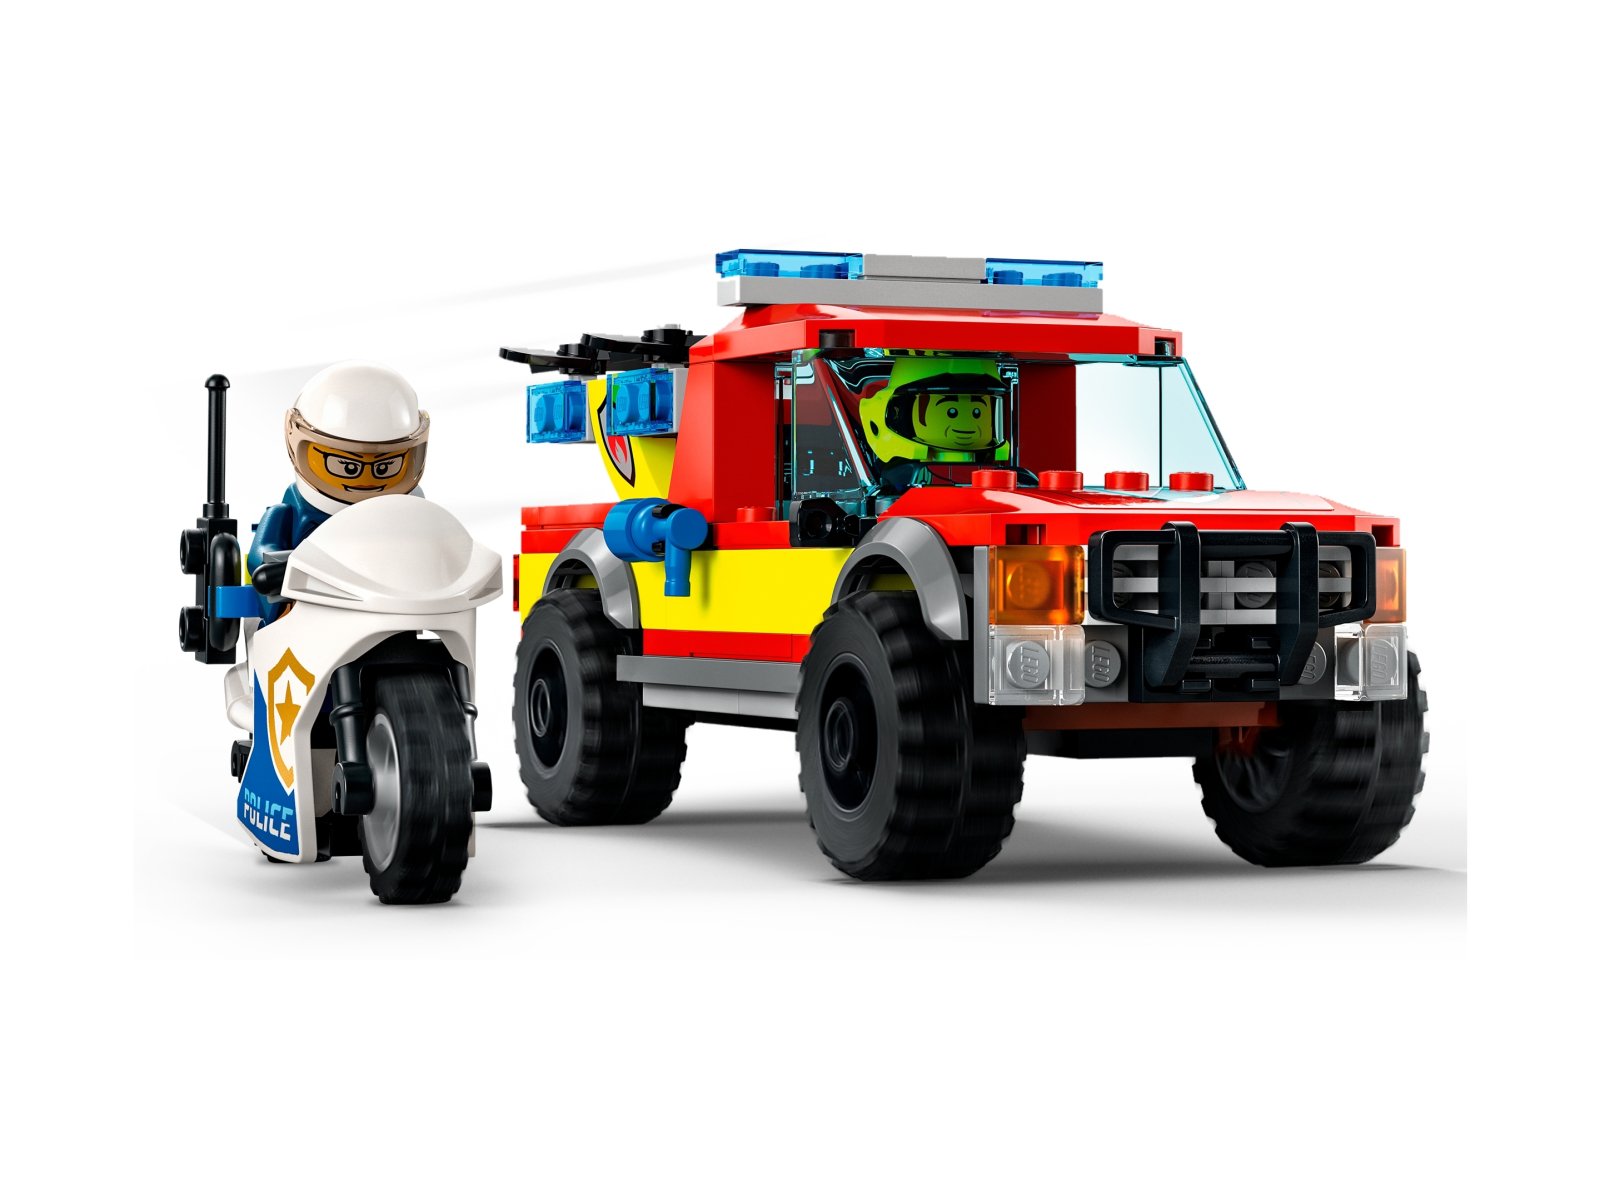 LEGO City Akcja strażacka i policyjny pościg 60319